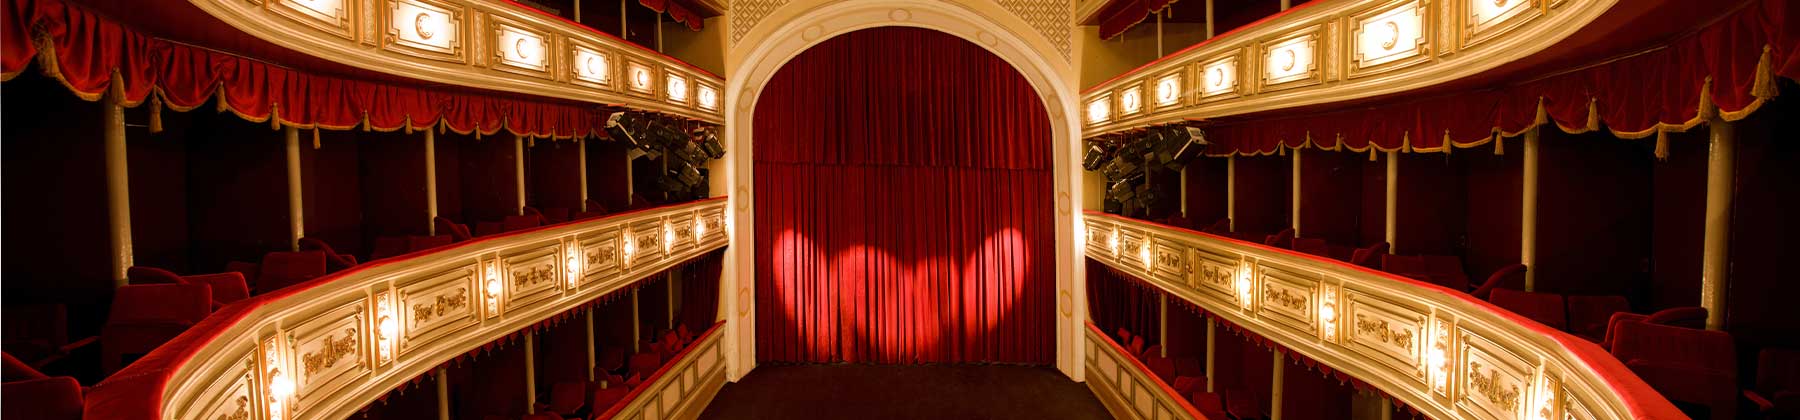 Sala interna di un grande teatro, con vista dalla galleria al palcoscenico